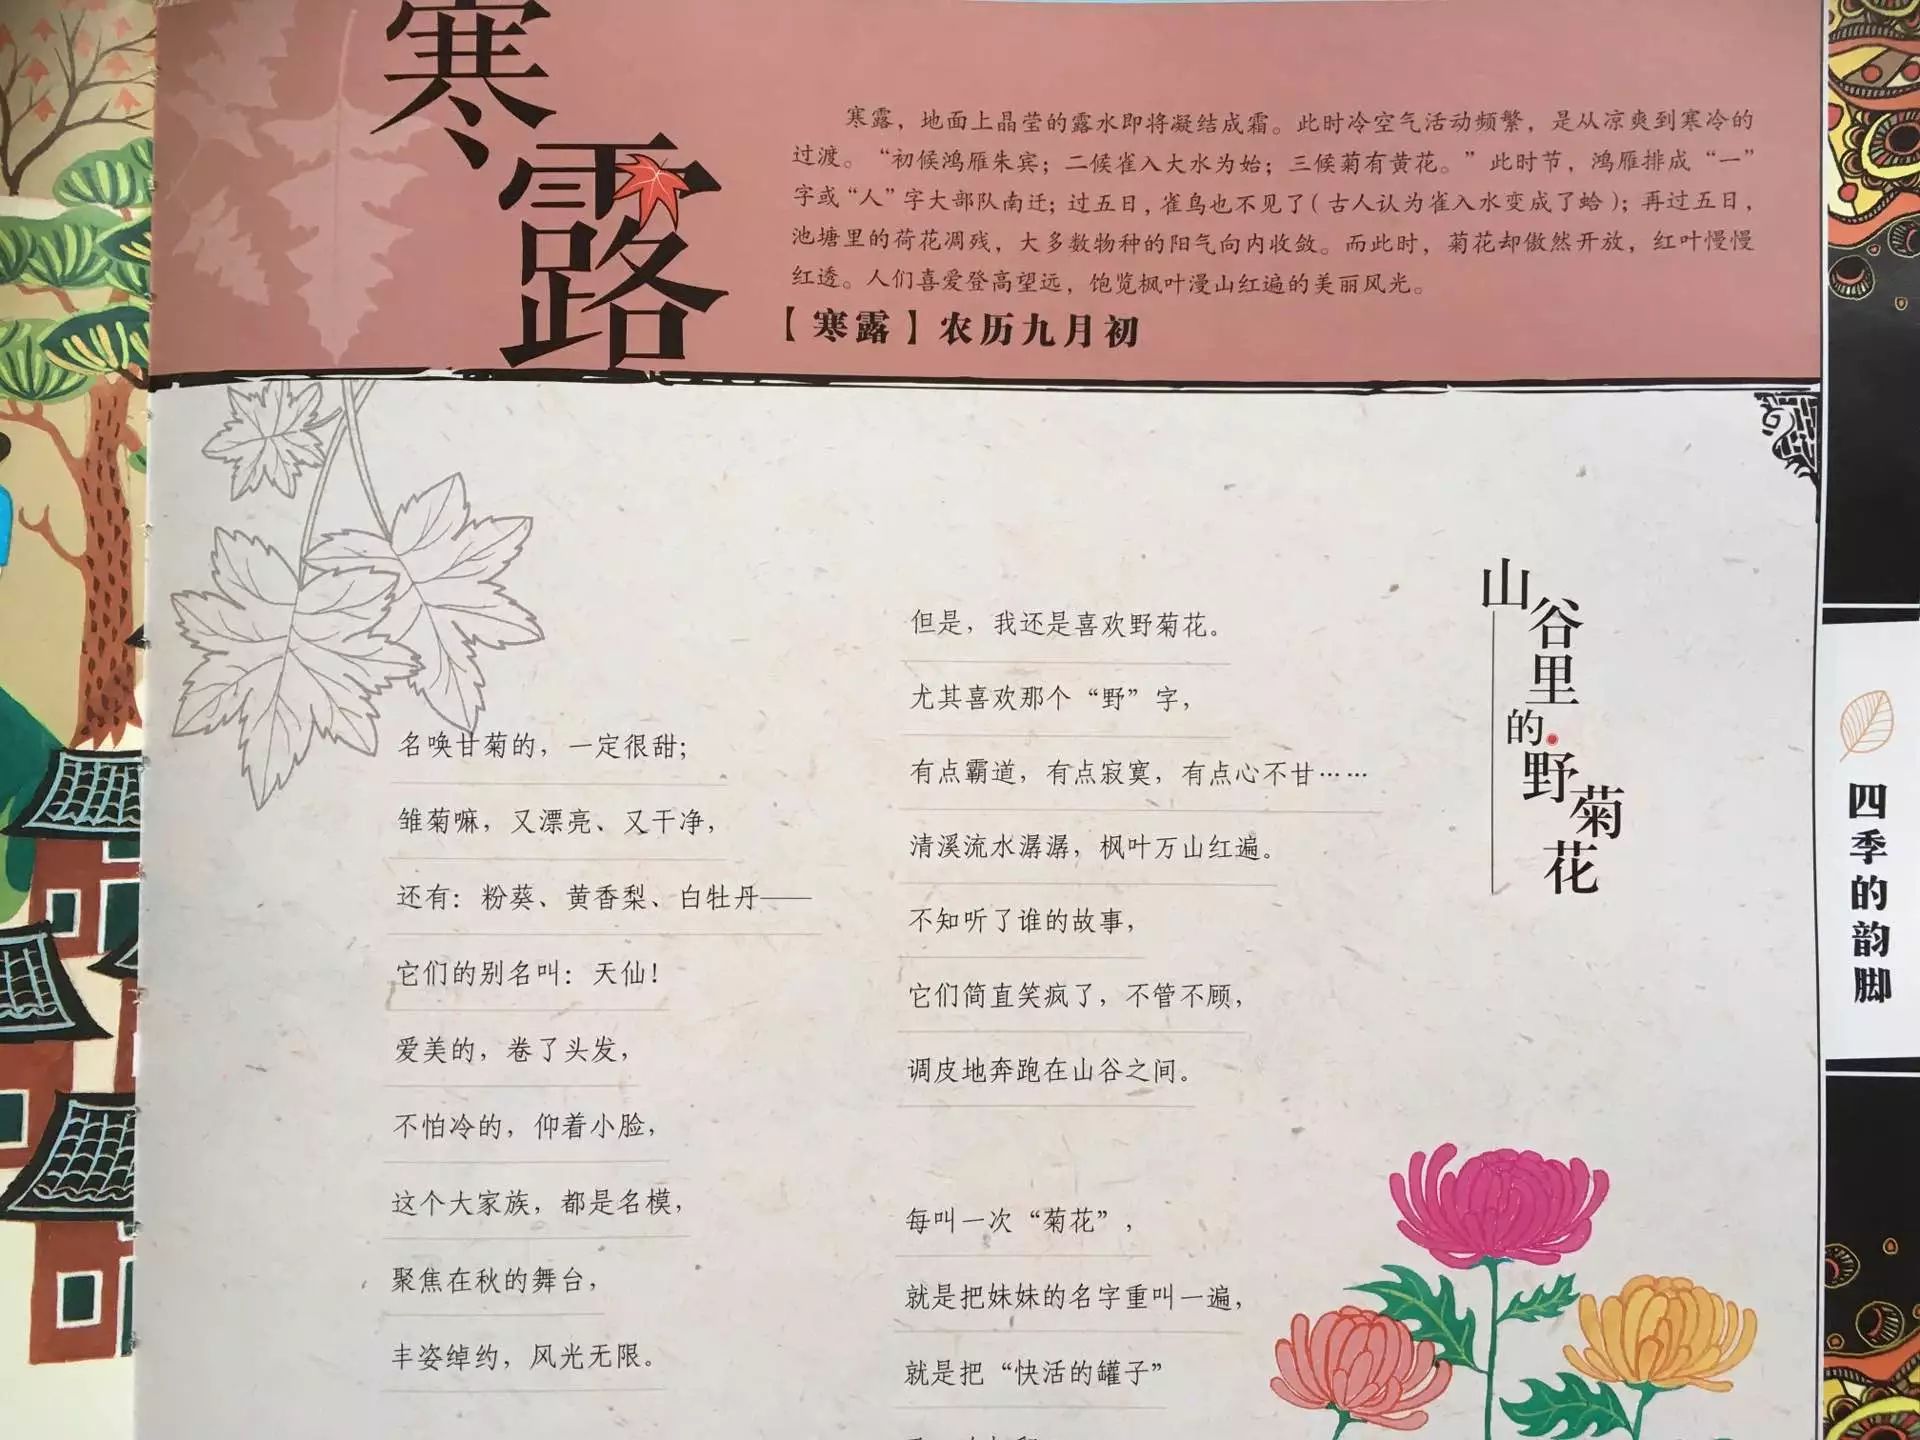 【四季的韵脚】中华二十四节气儿童诗——寒露